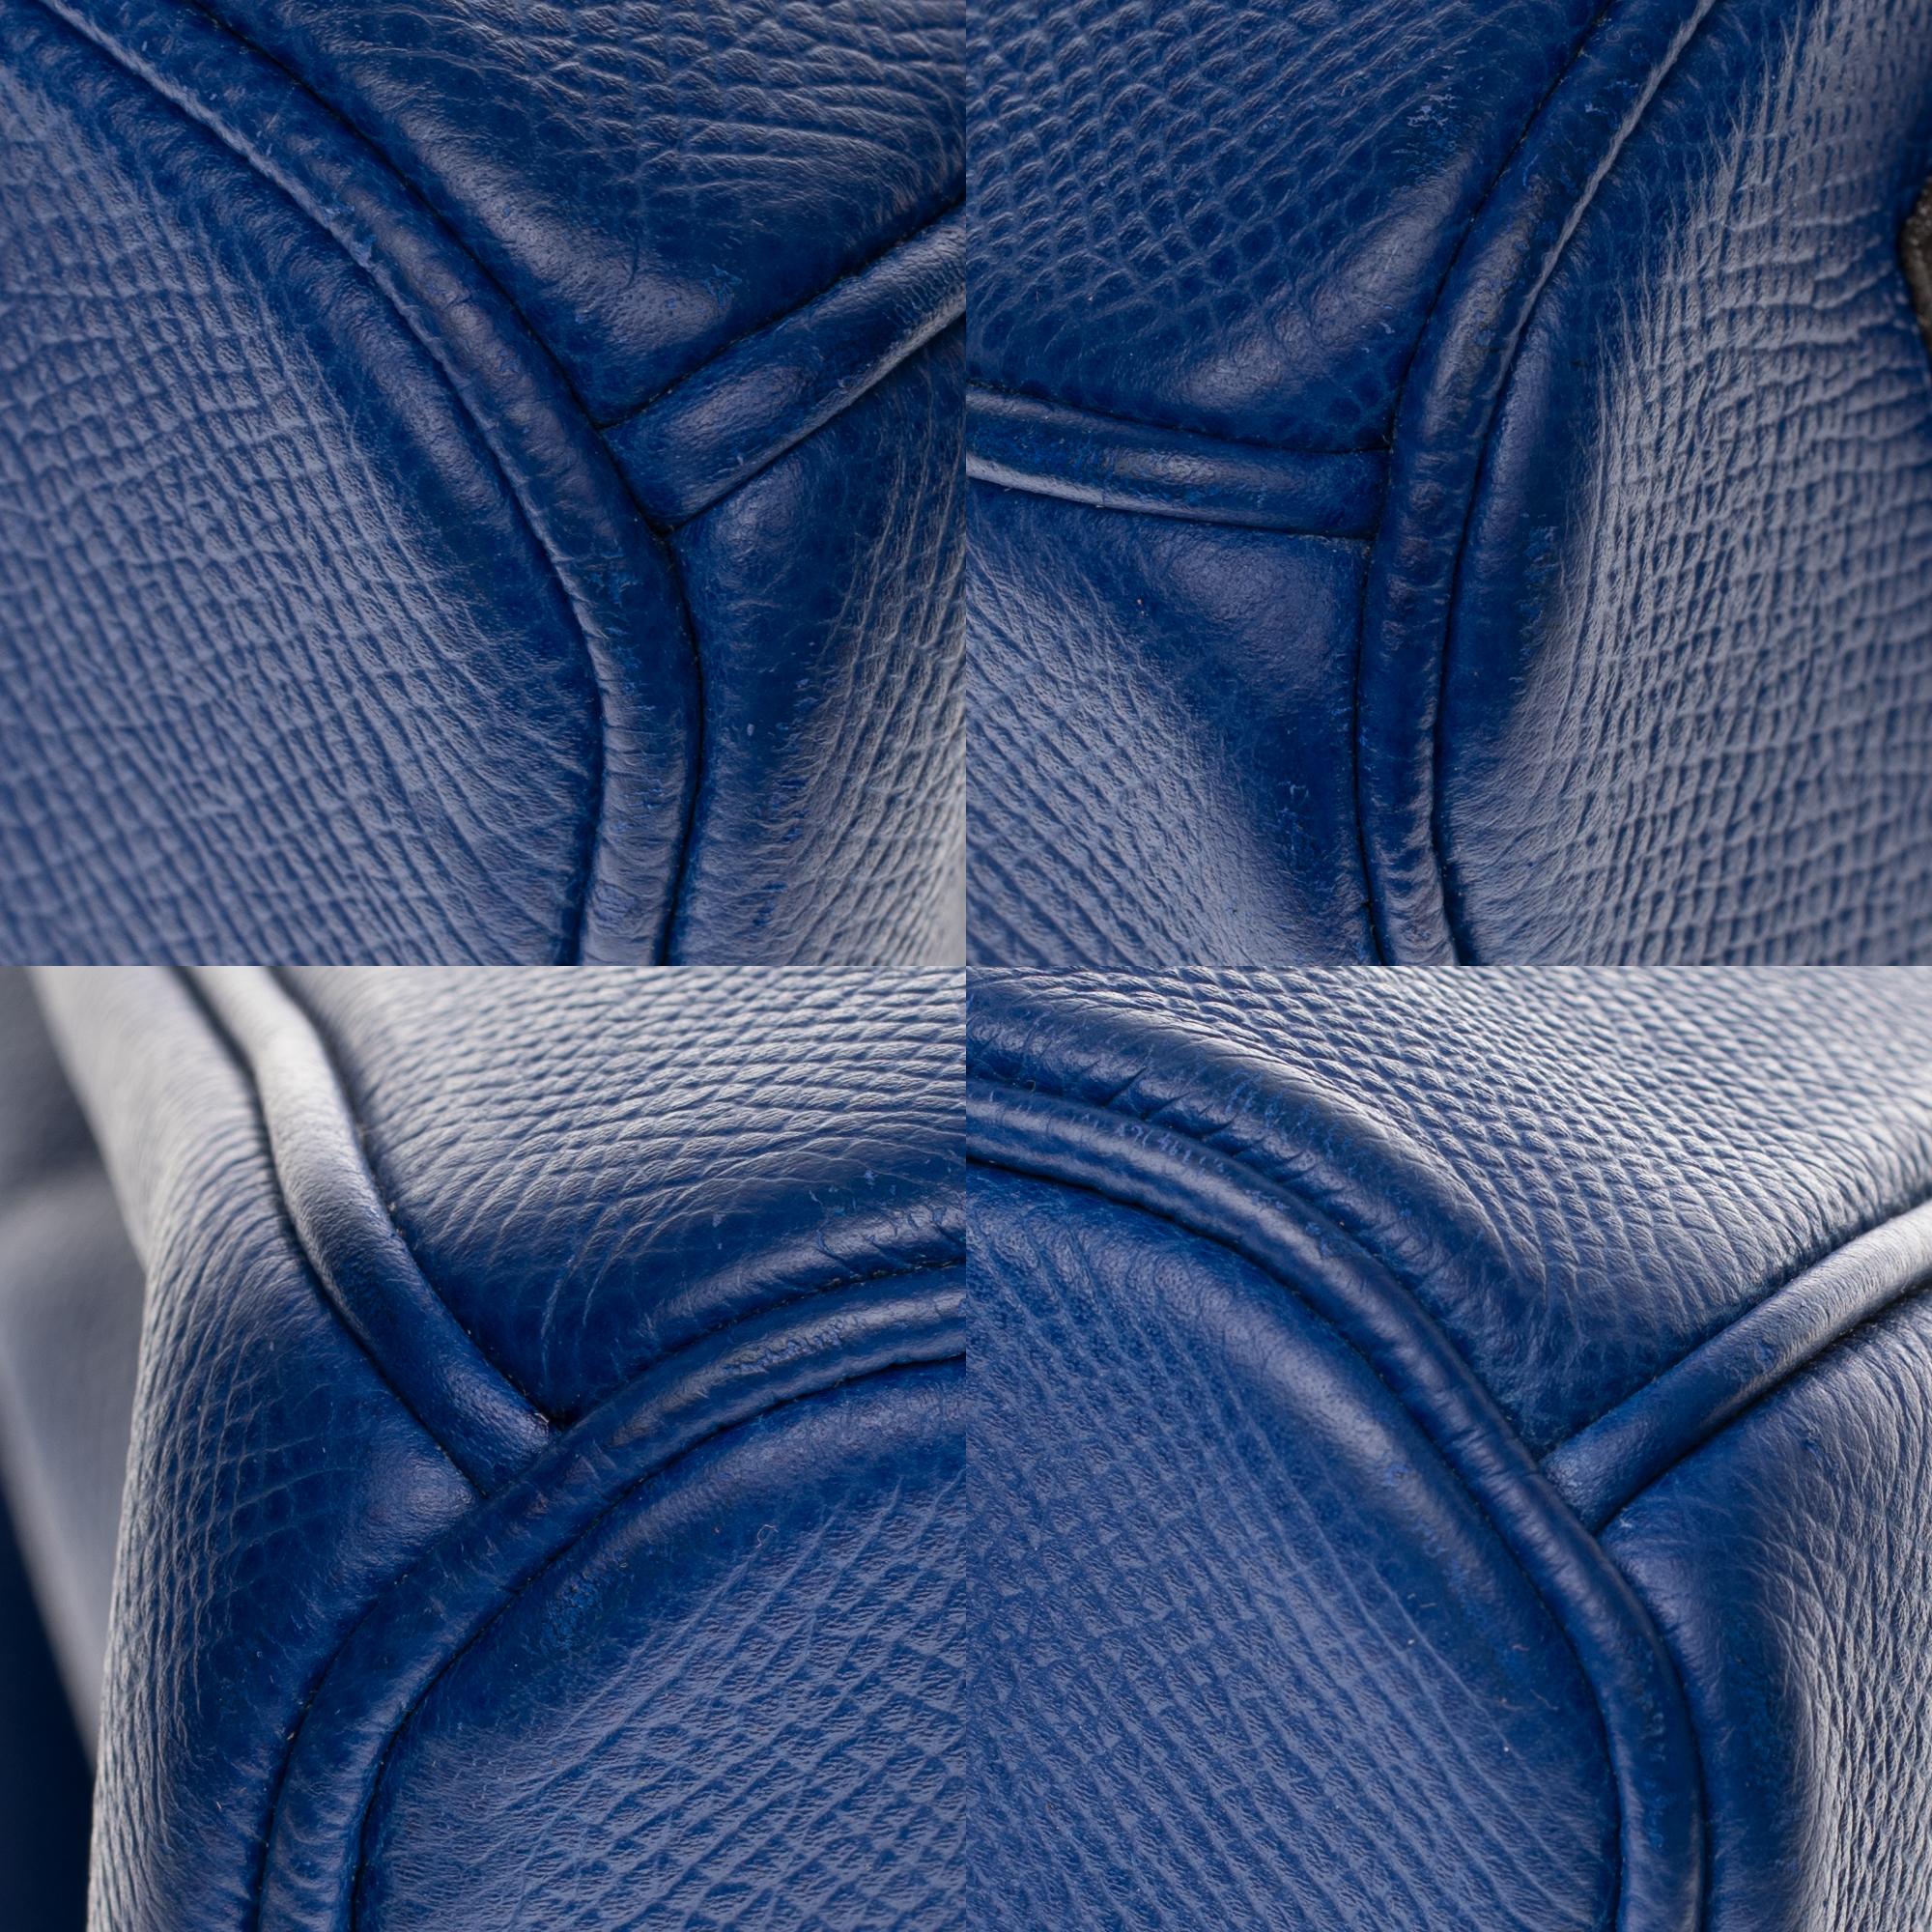 Hermès Birkin 35 handbag in bleu électrique epsom leather, GHW 4